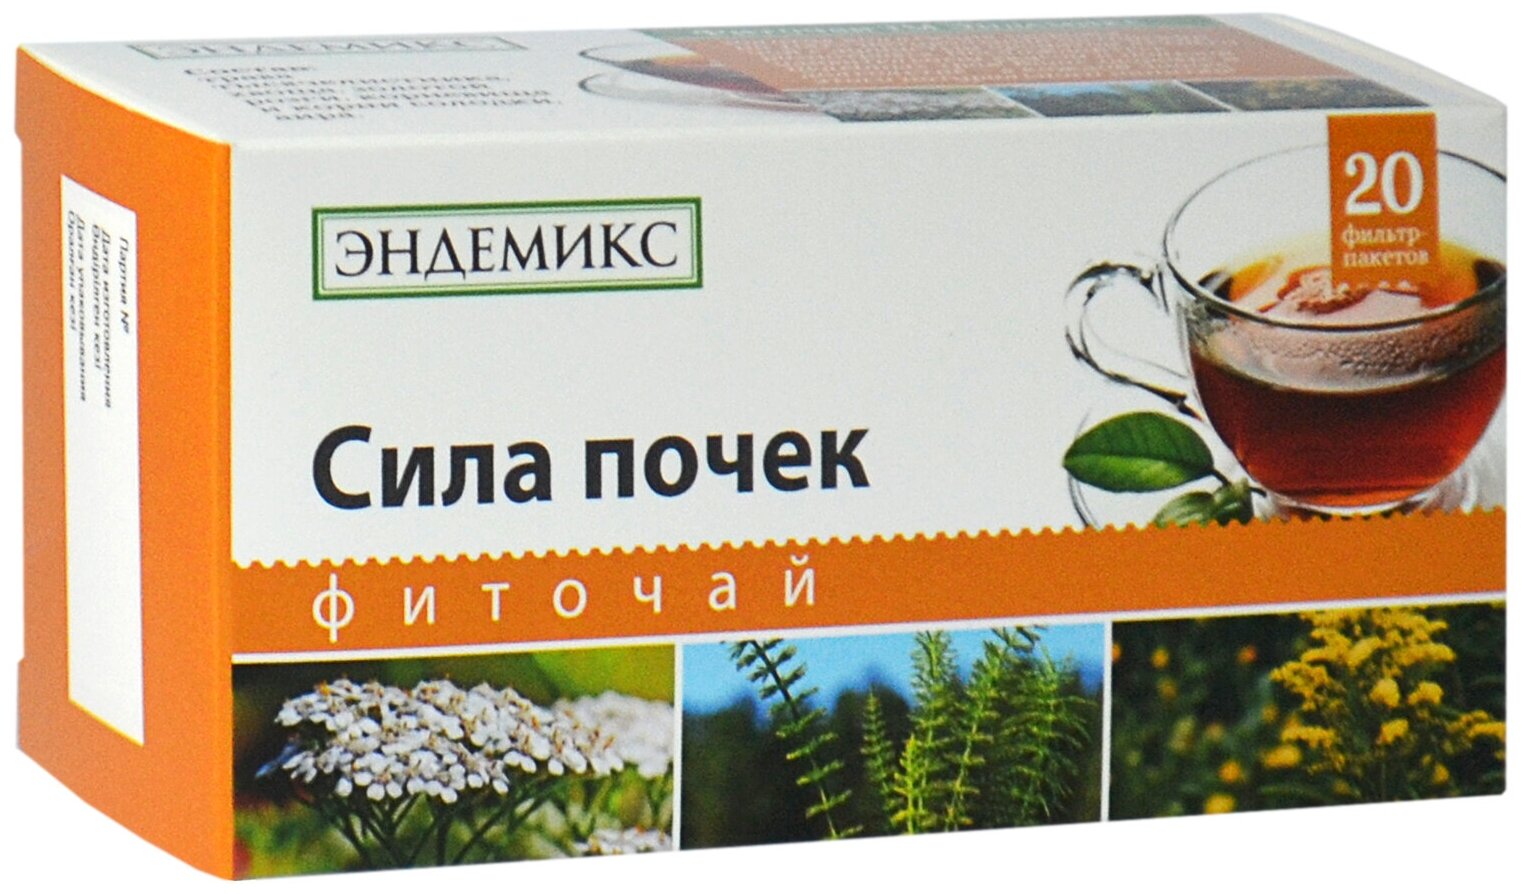 Травяной чай Эндемикс в пакетиках почечный, противовоспалительный, мочегонный для почек и мочеполовой системы, детокс, 20 шт.